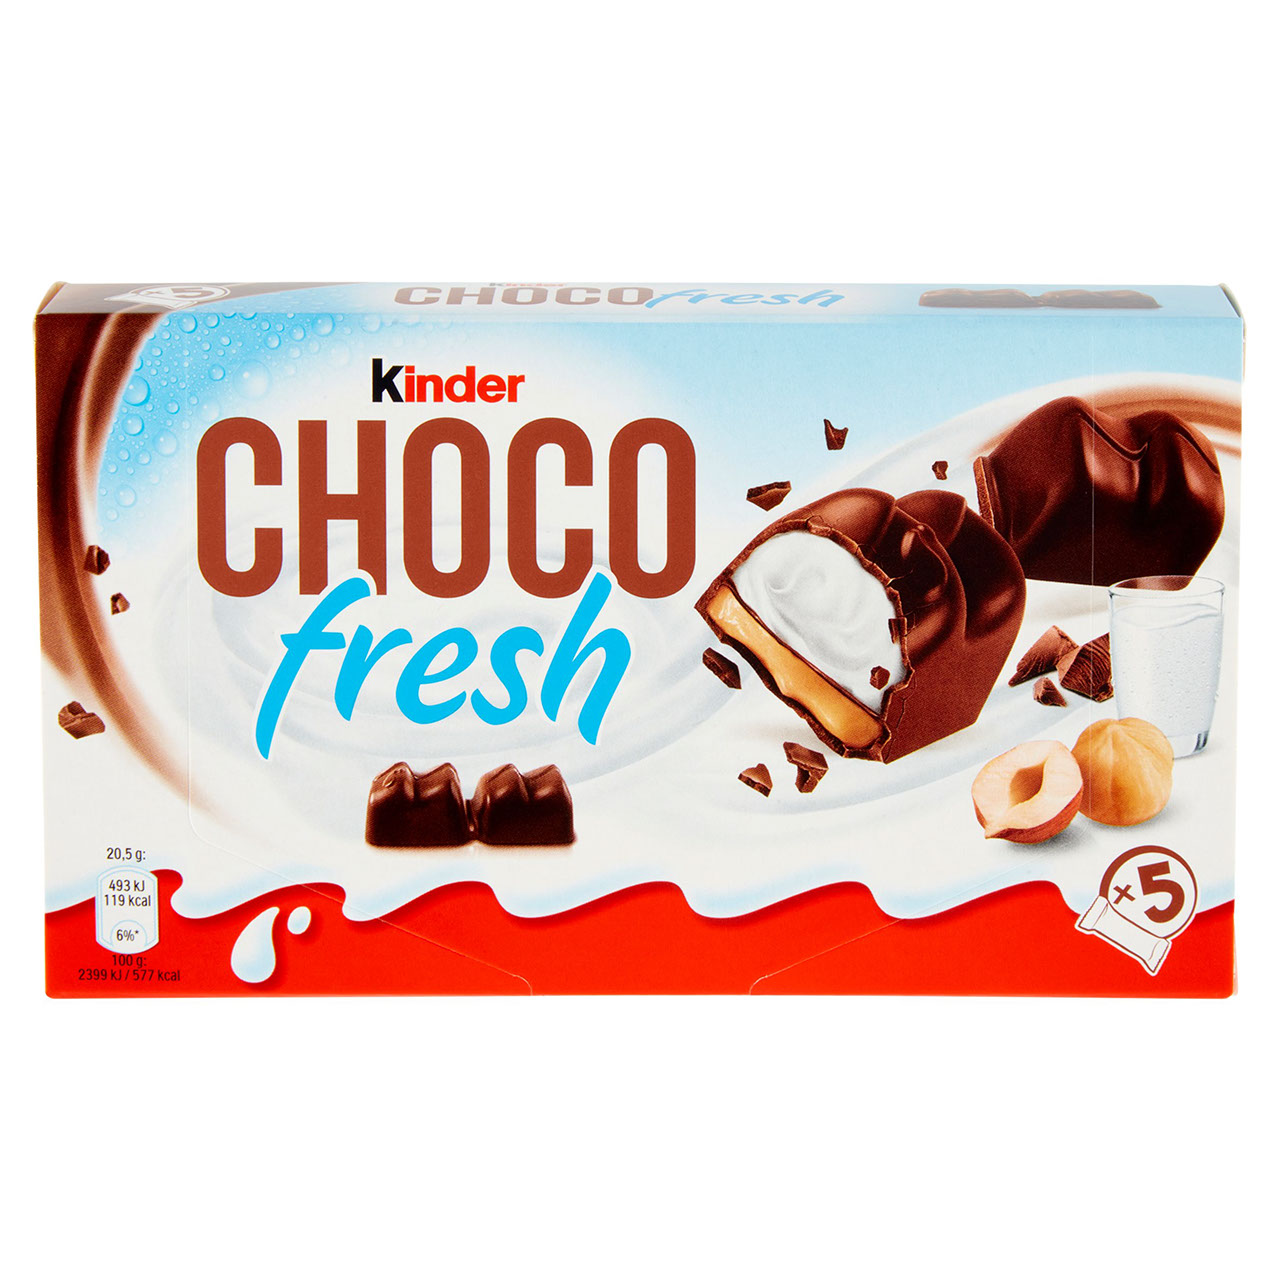 Kinder Choco fresh 5 x 20,5 g in vendita online